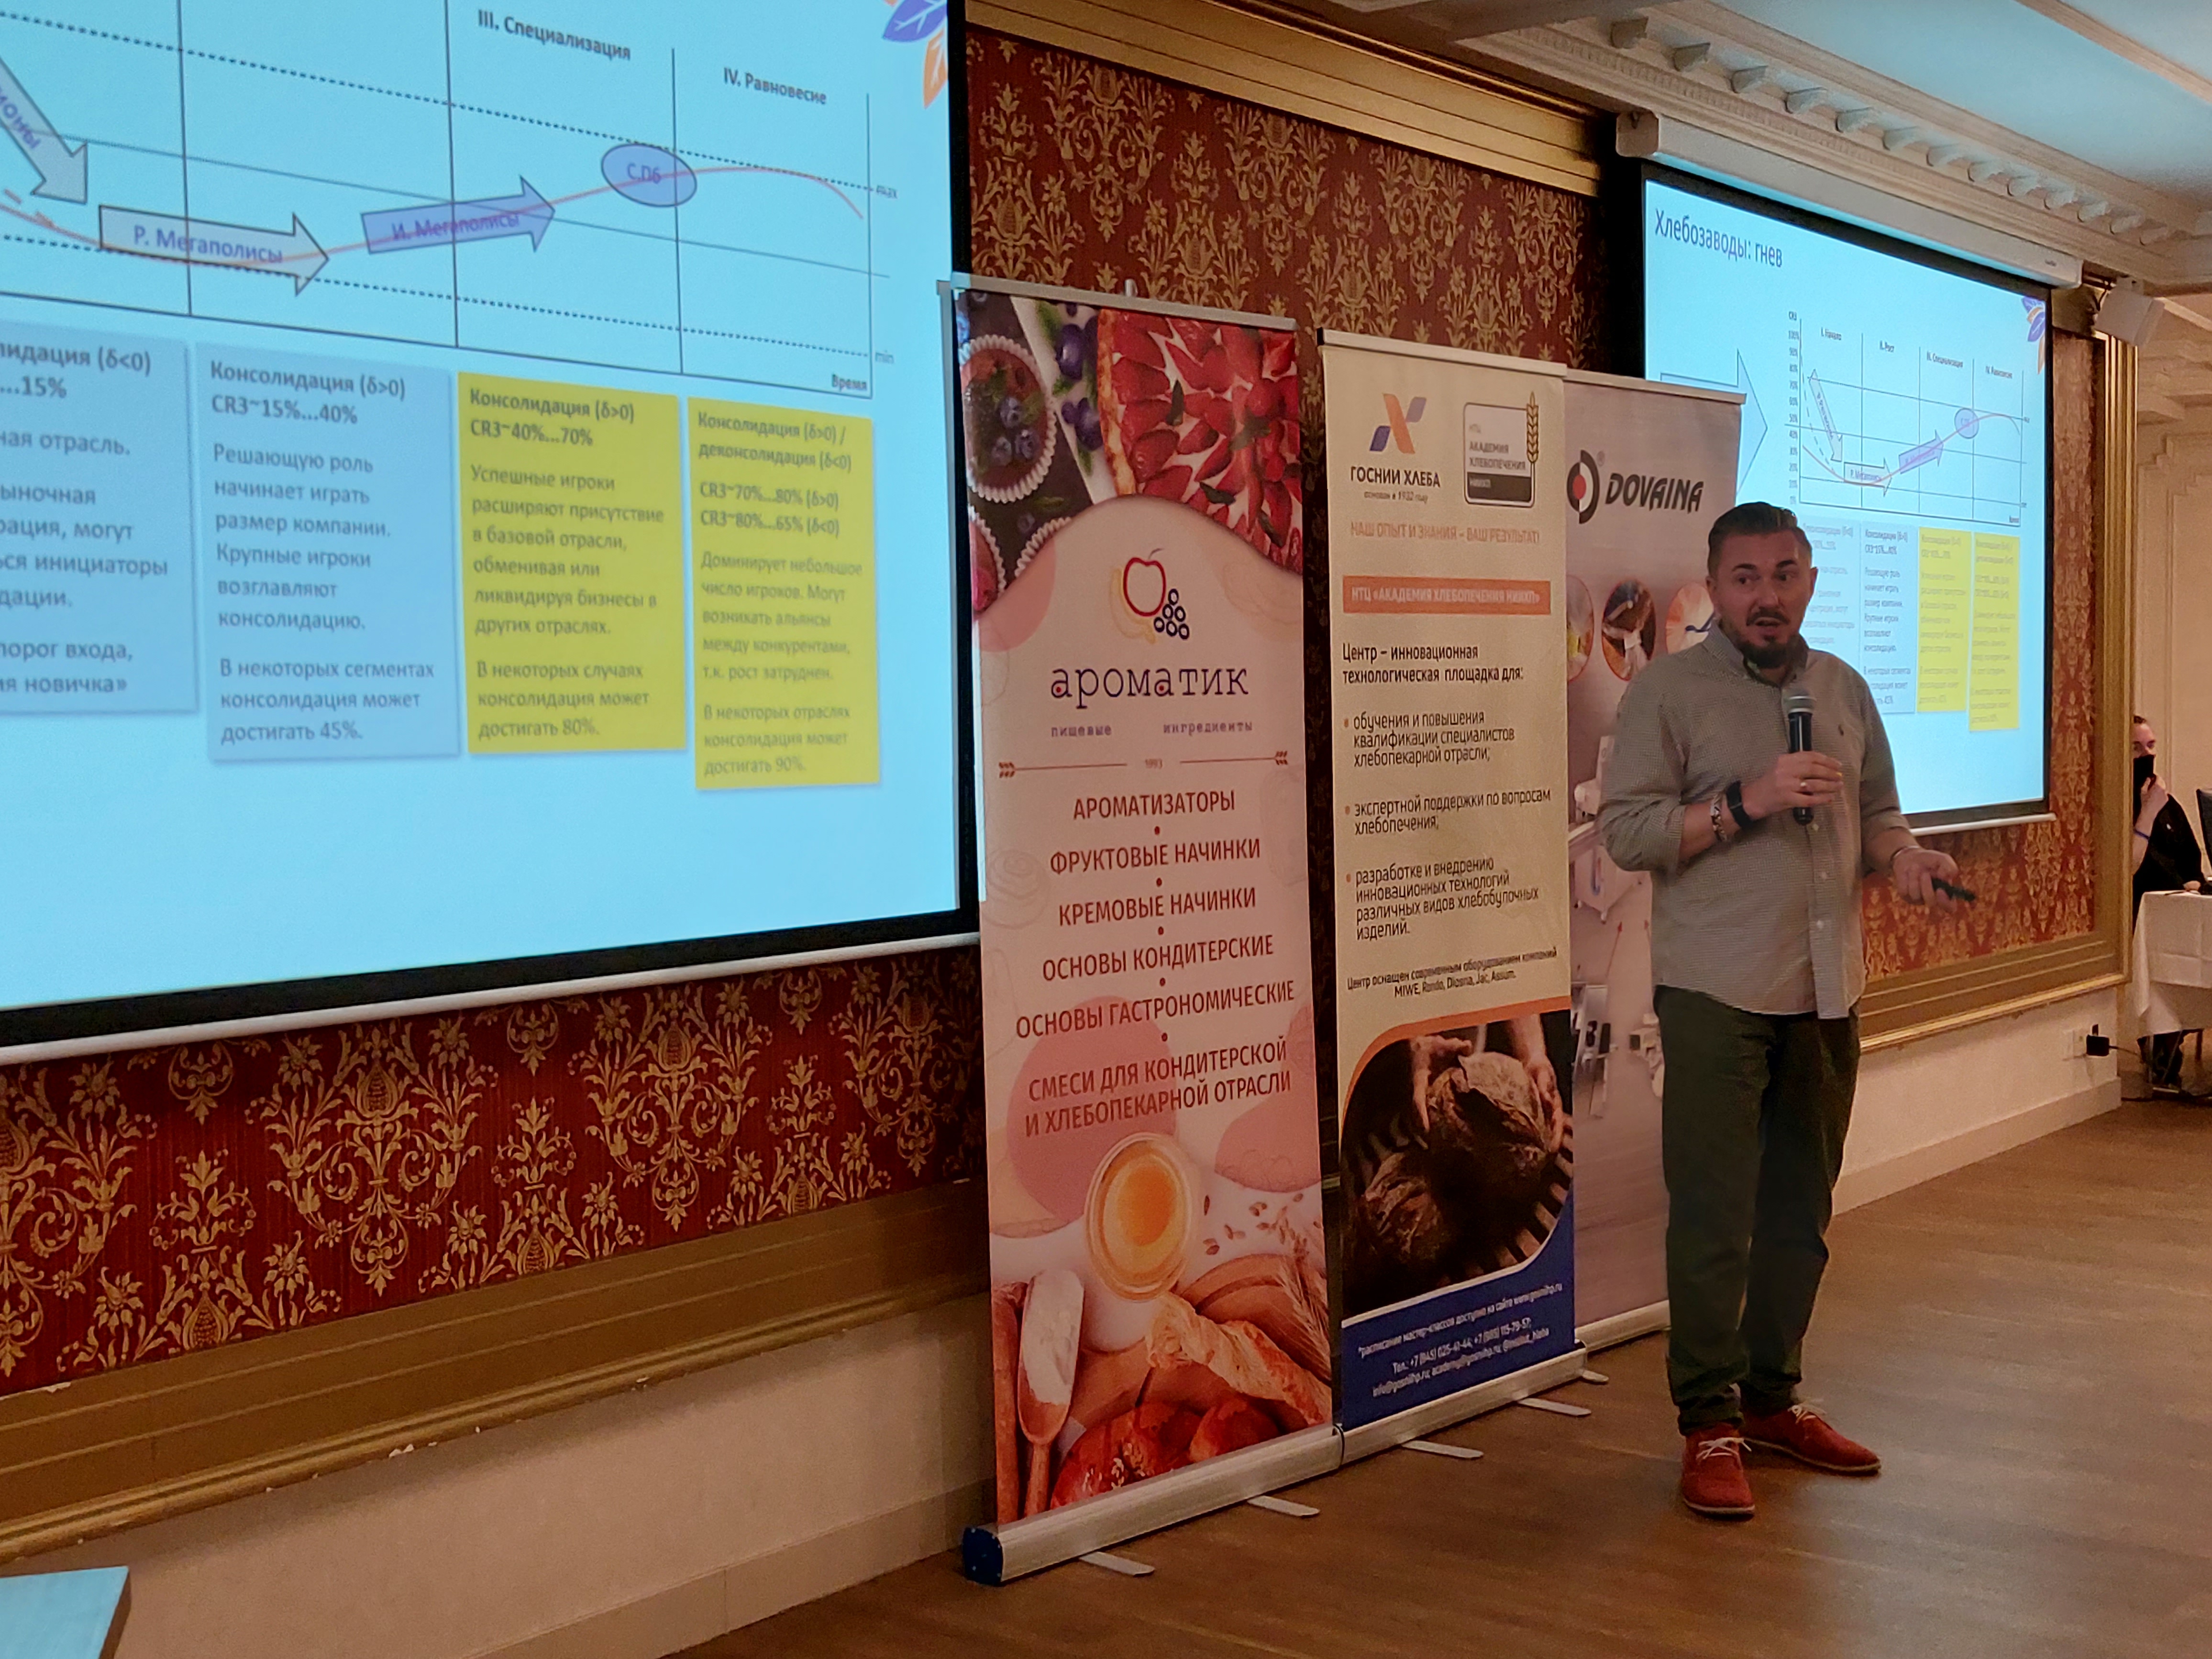 Роман Калинин, Ватель Маркетинг, бизнес-семинар хлебопеков в Петербурге